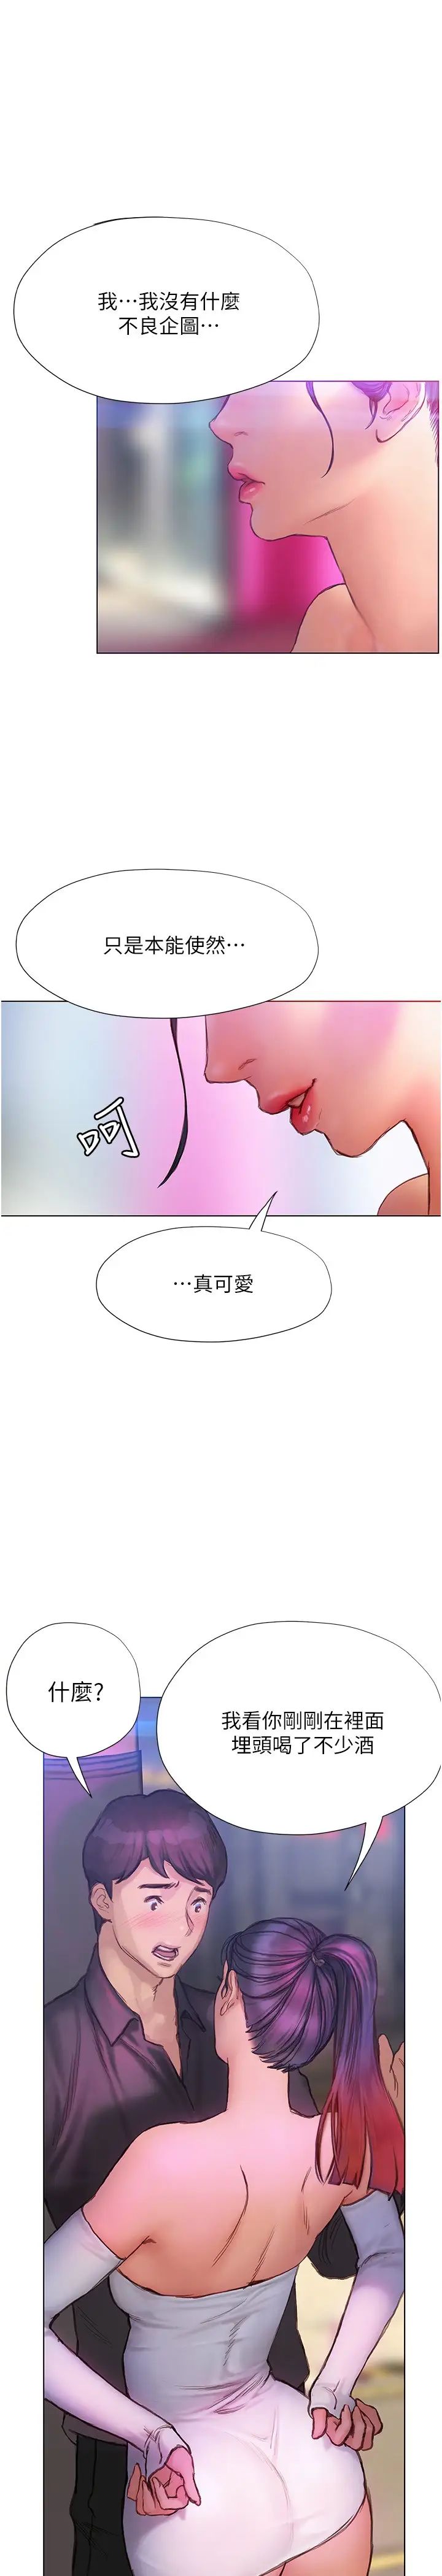 韩国污漫画 終曖昧結 第7话让姐姐用嘴帮你 1